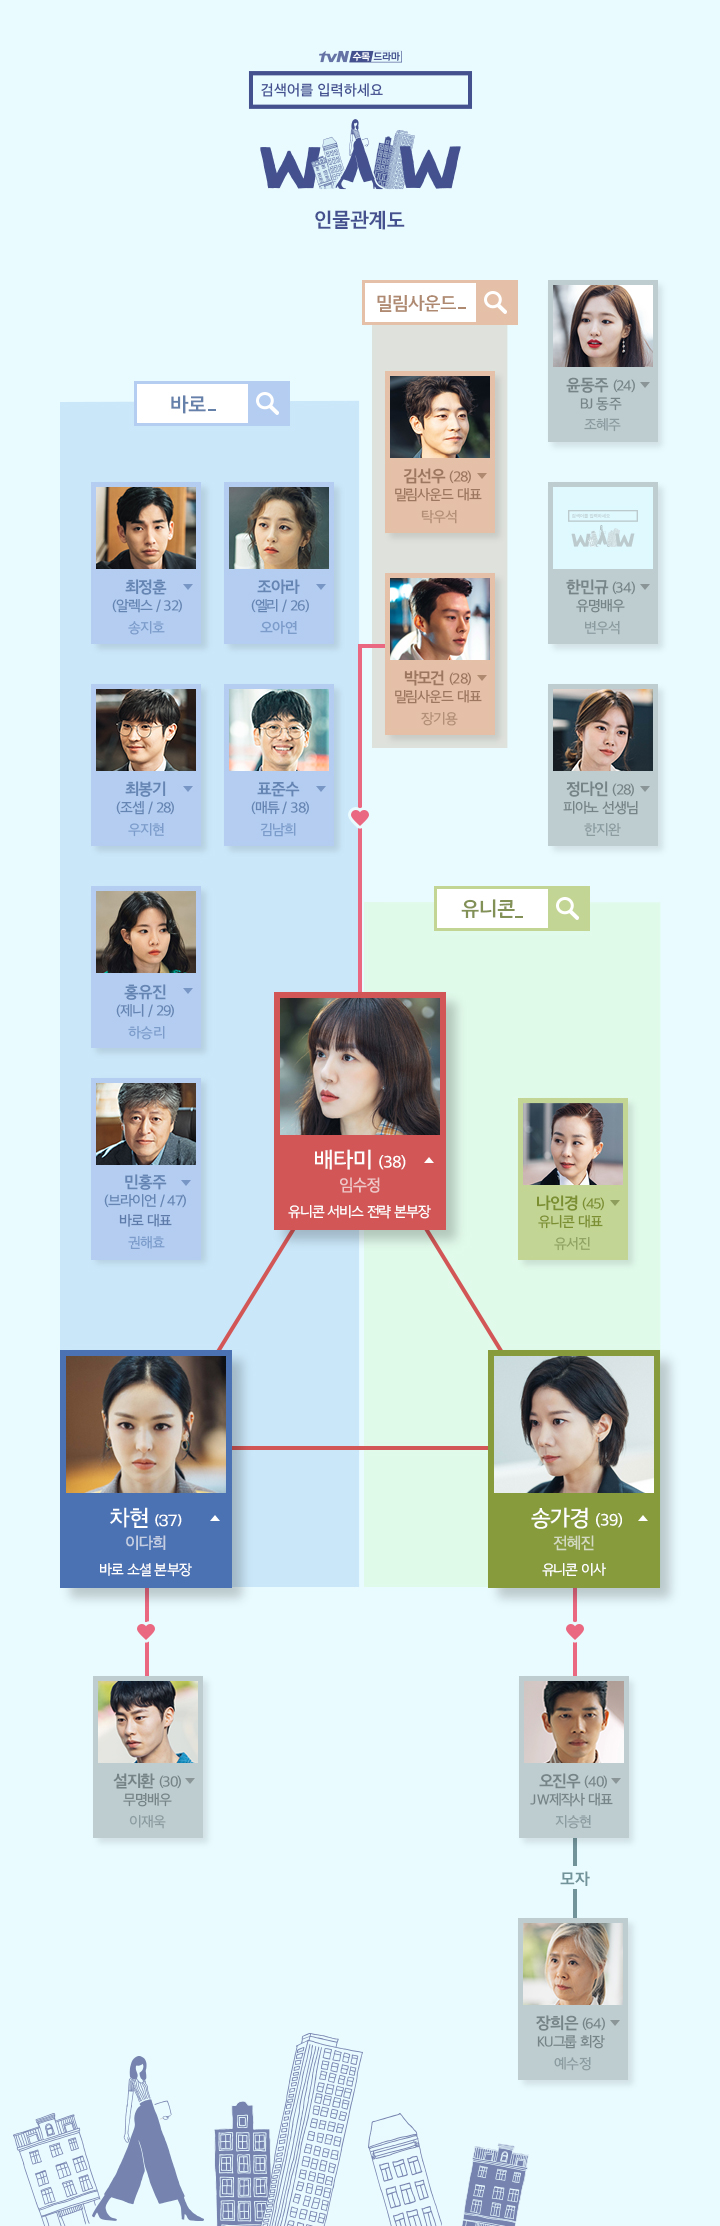 tvN드라마 '검색어를 입력하세요 WWW' 인물관계도(출처: 공식 홈페이지)